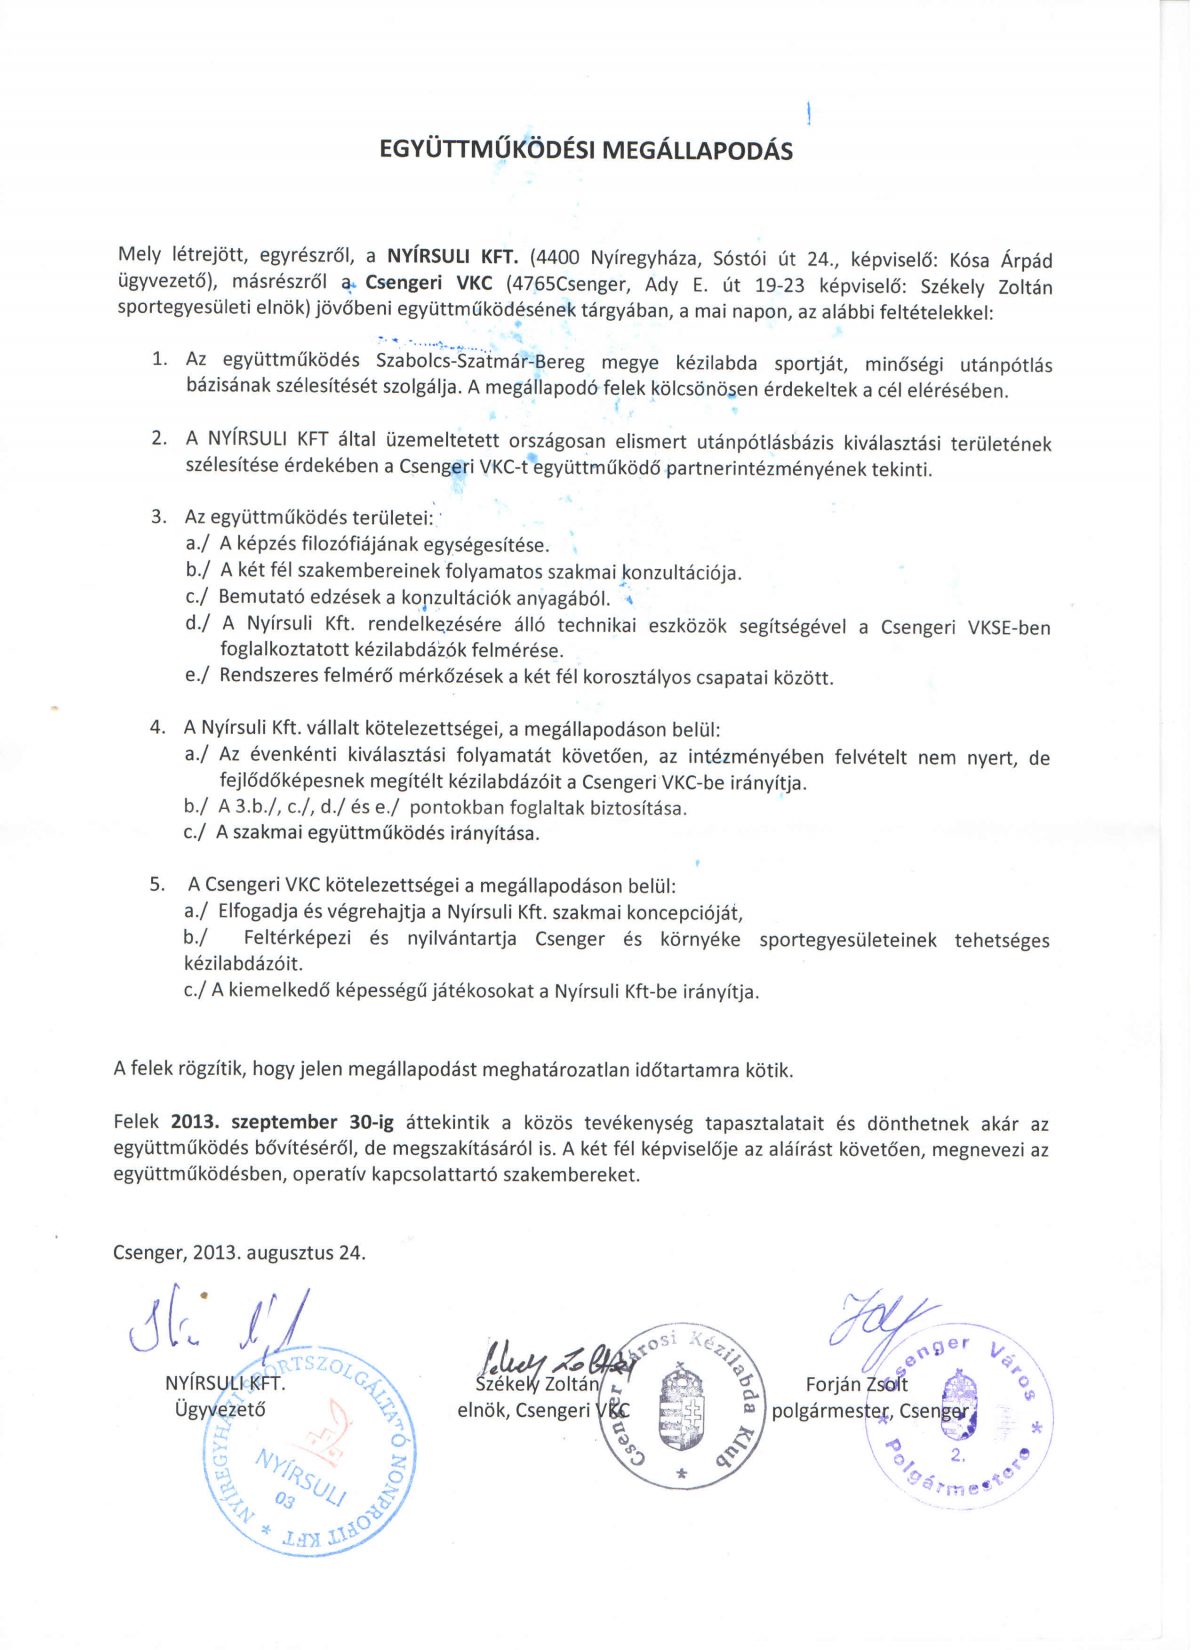 Együttműködési megállapodás a Nyírsuli Kft-vel!